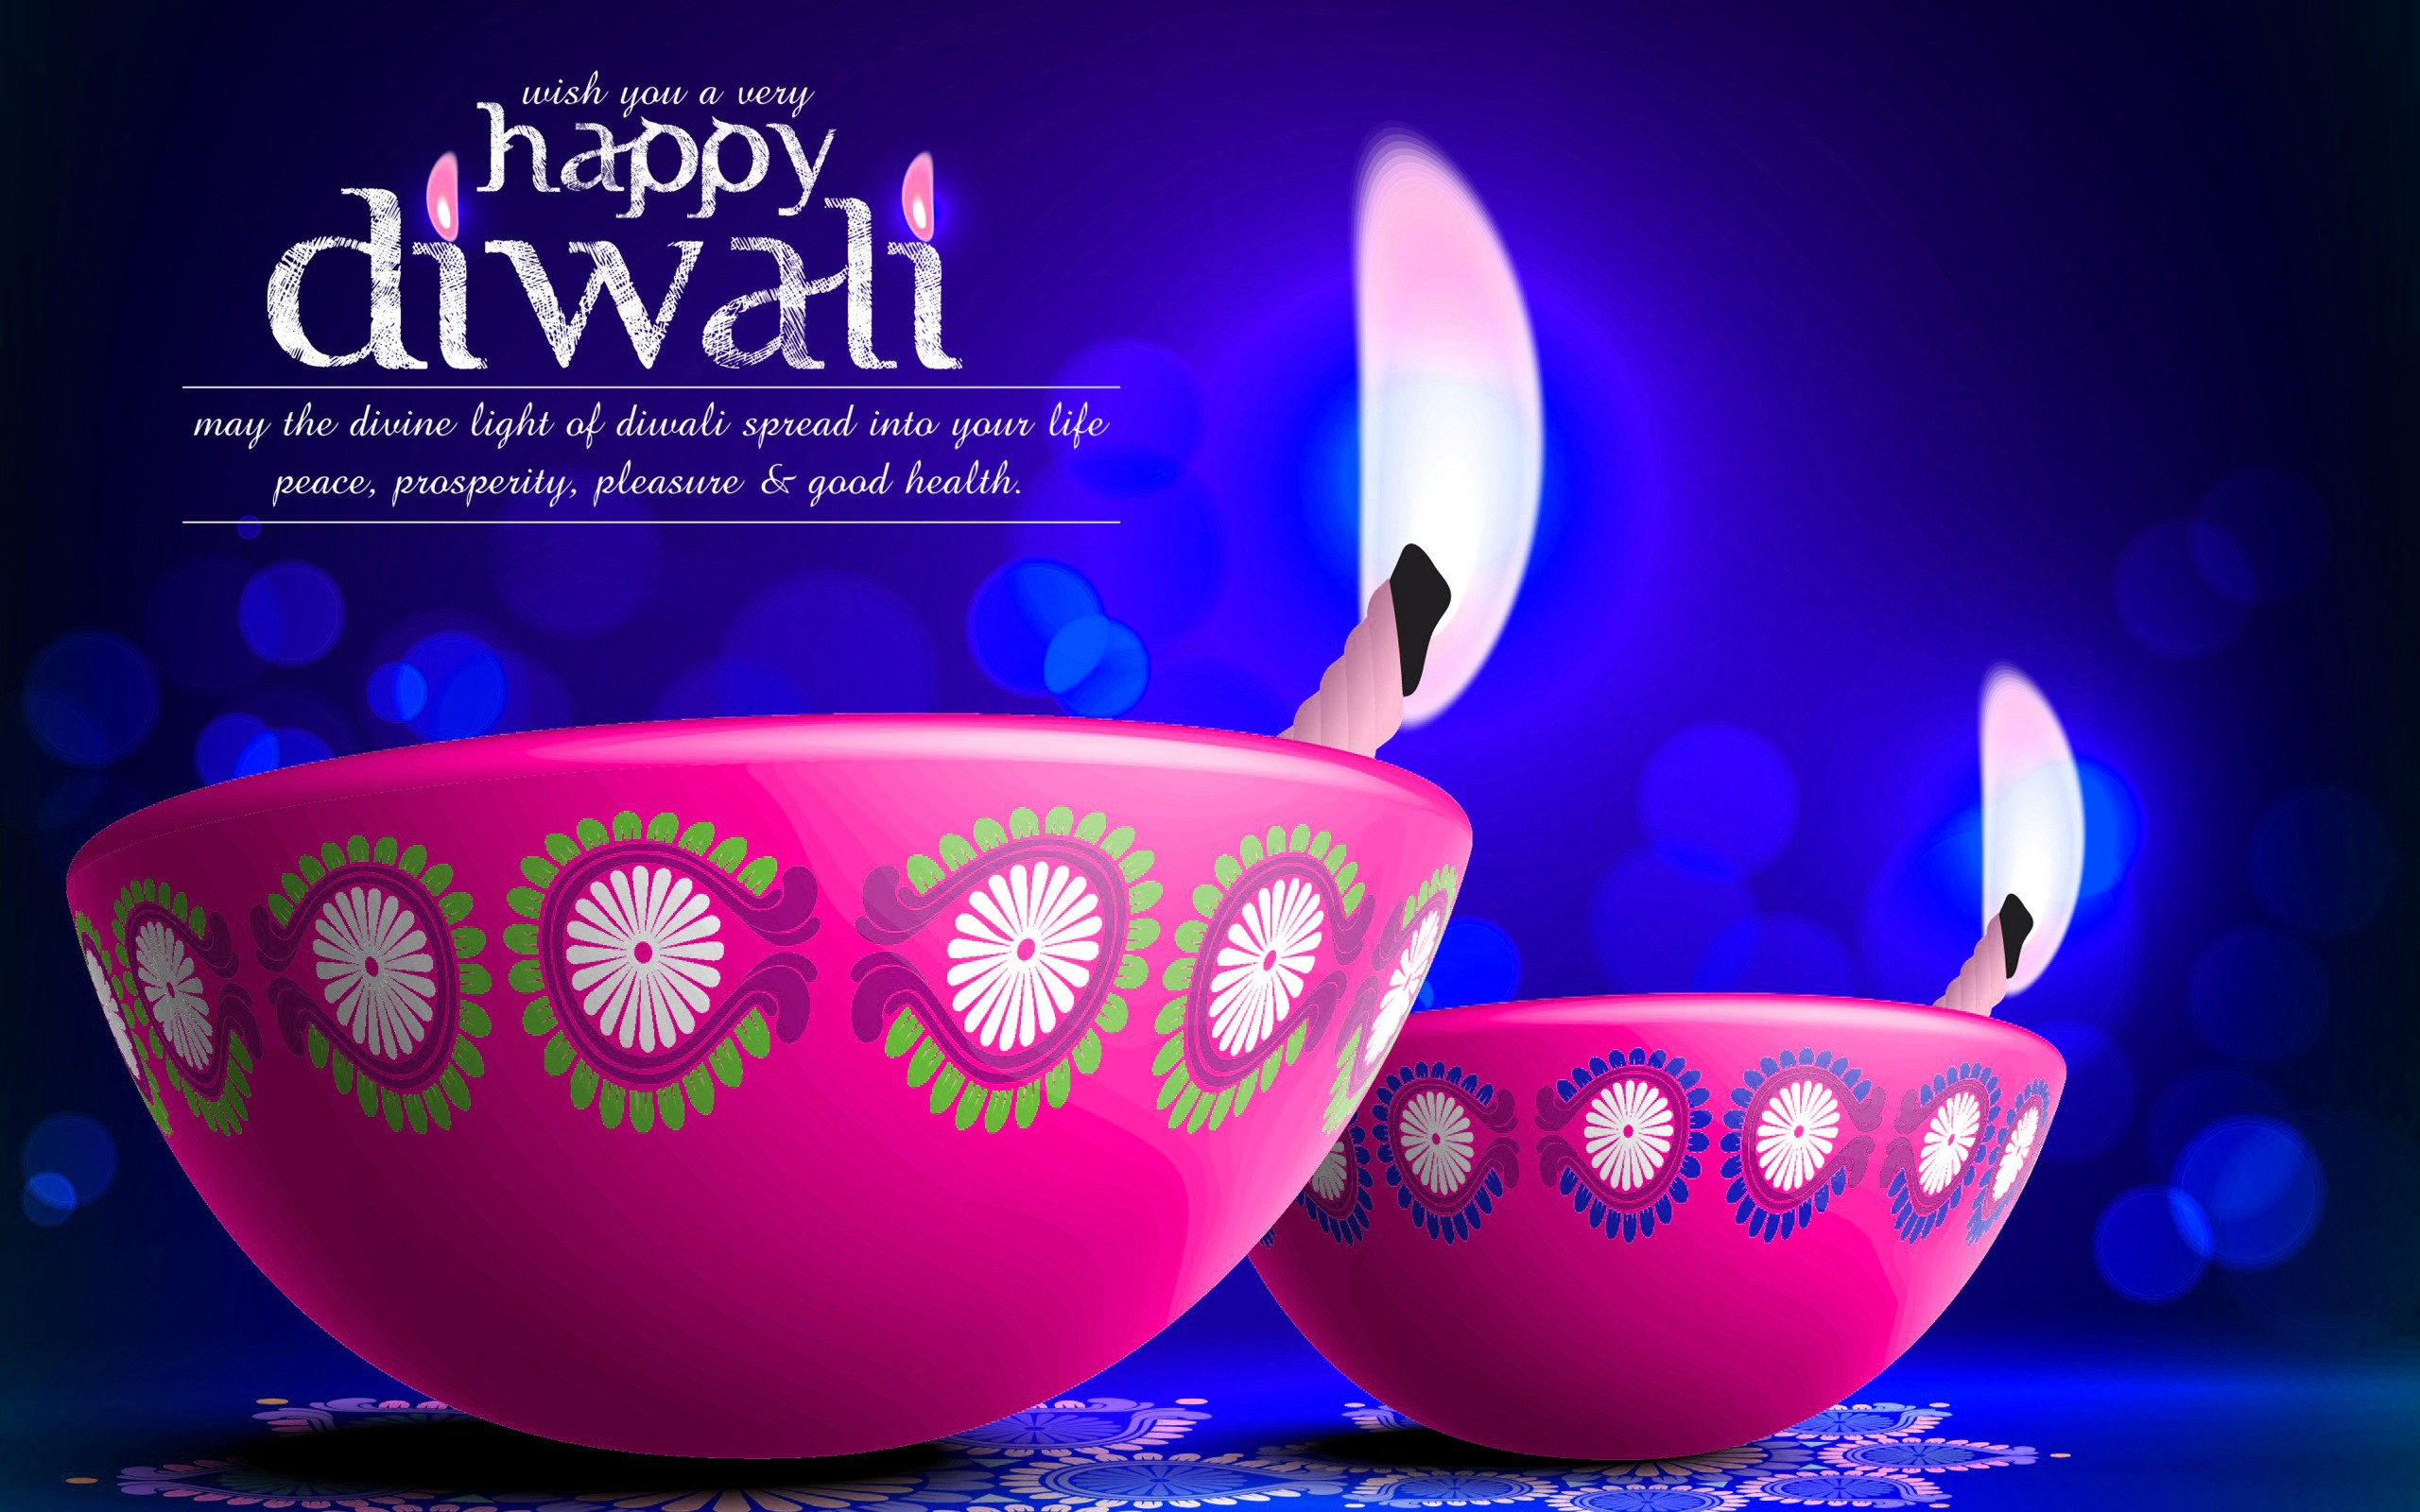 Happy Diwali Images, Diwali Images, Diwali Wallpapers